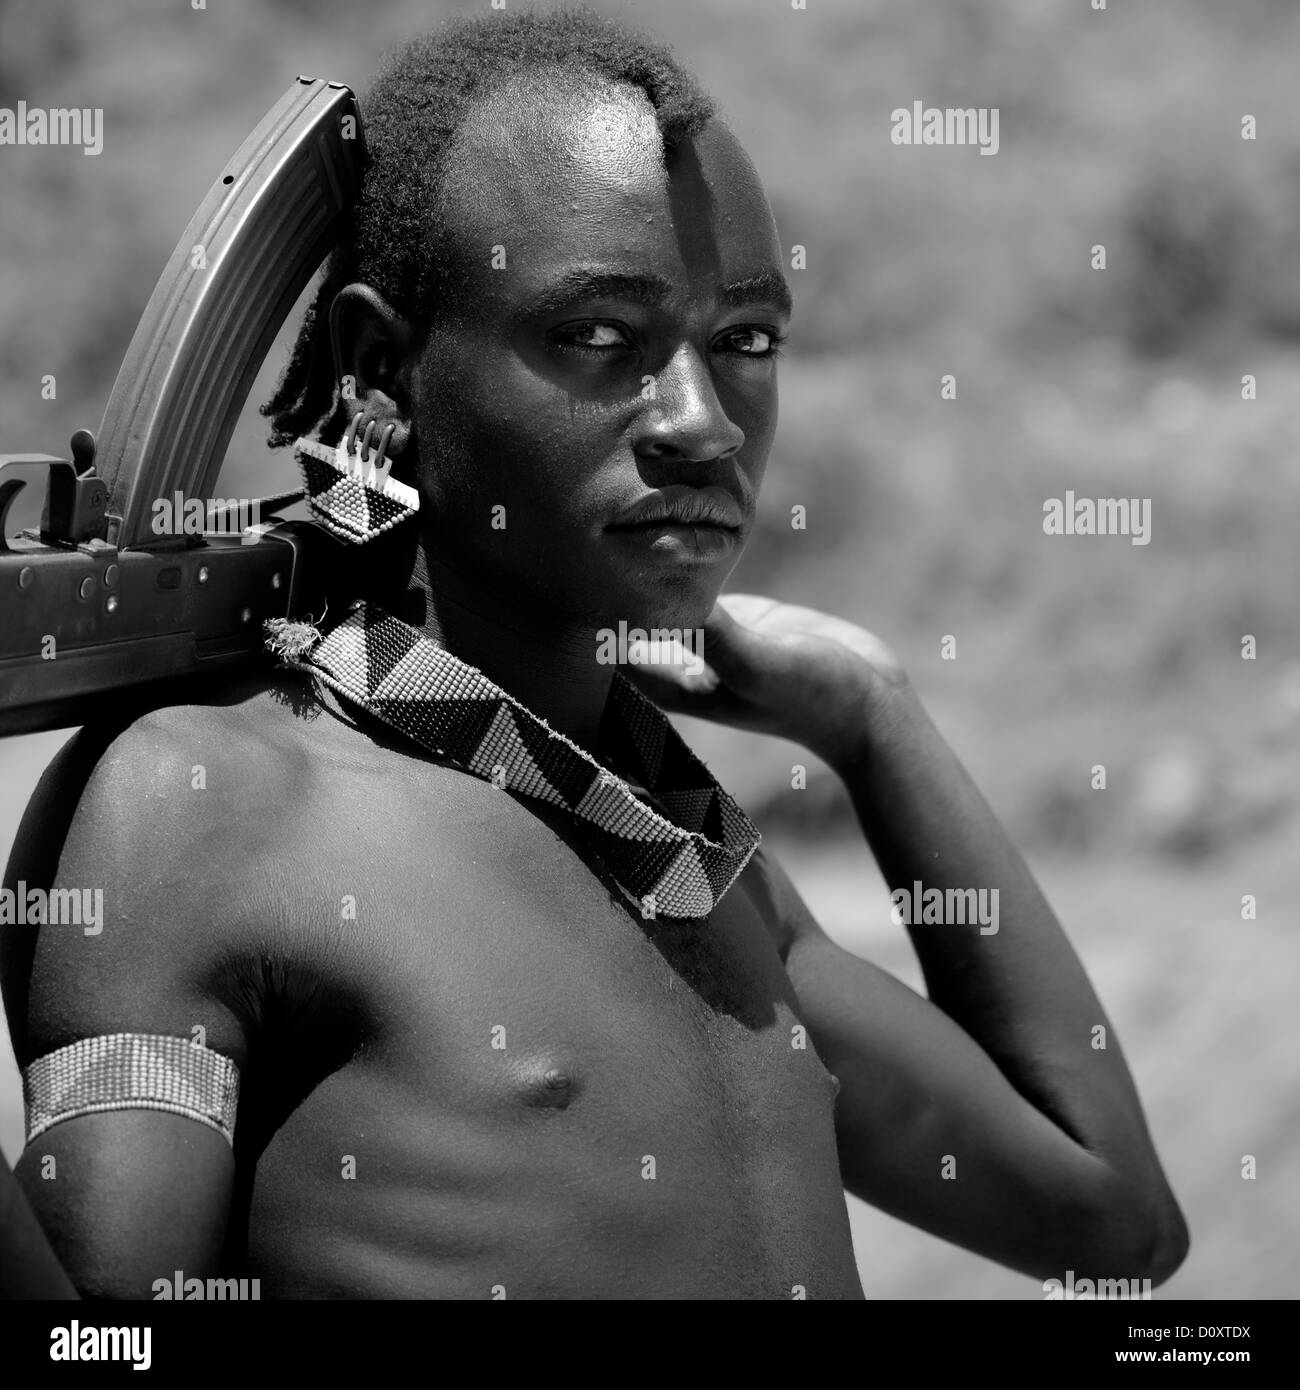 Black And White Portrait Of A Banna Tribe Warrior With Kalashnikov, Omo Valley, Ethiopia Stock Photo